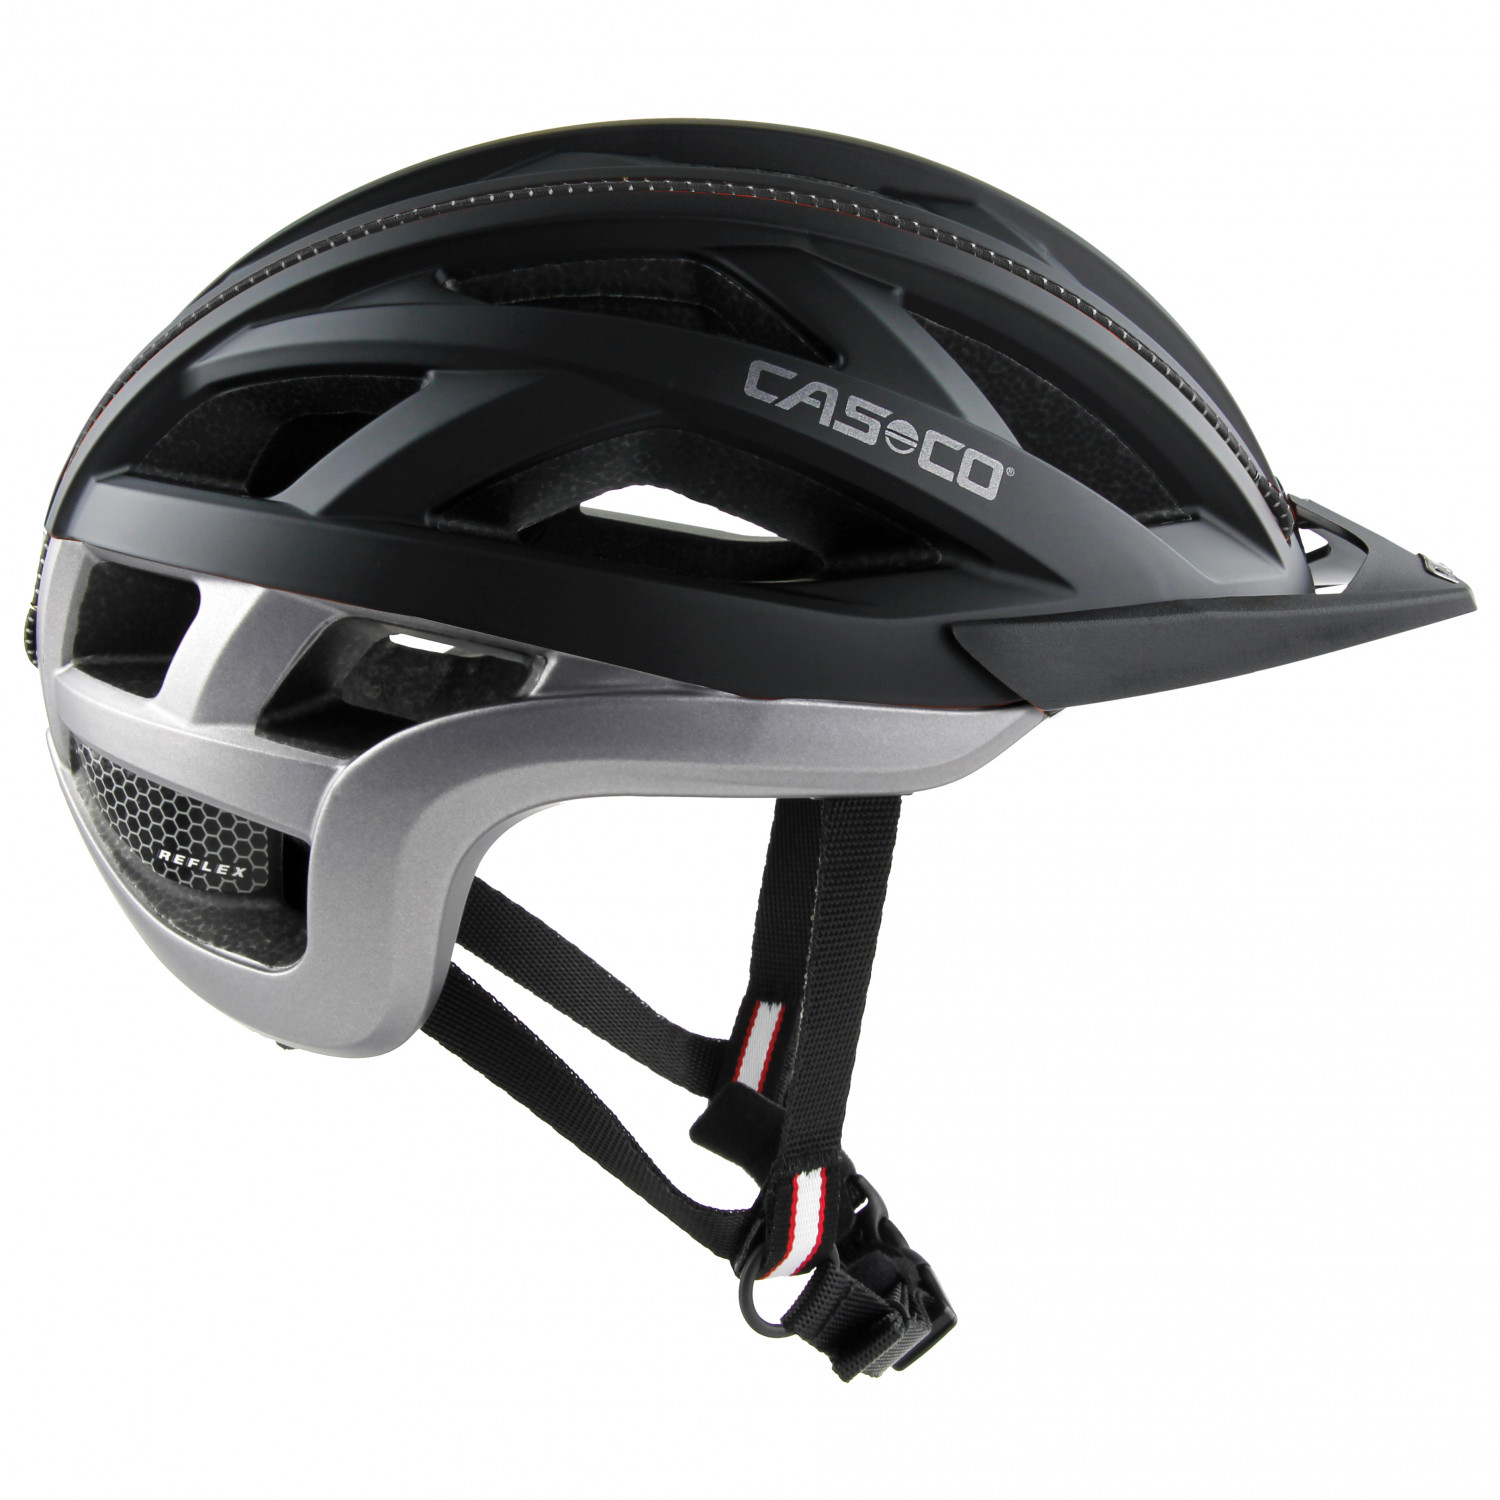 Велосипедный шлем Casco Cuda 2, цвет Black Anthracite Matt велосипедный шлем casco cuda 2 04 1634 l